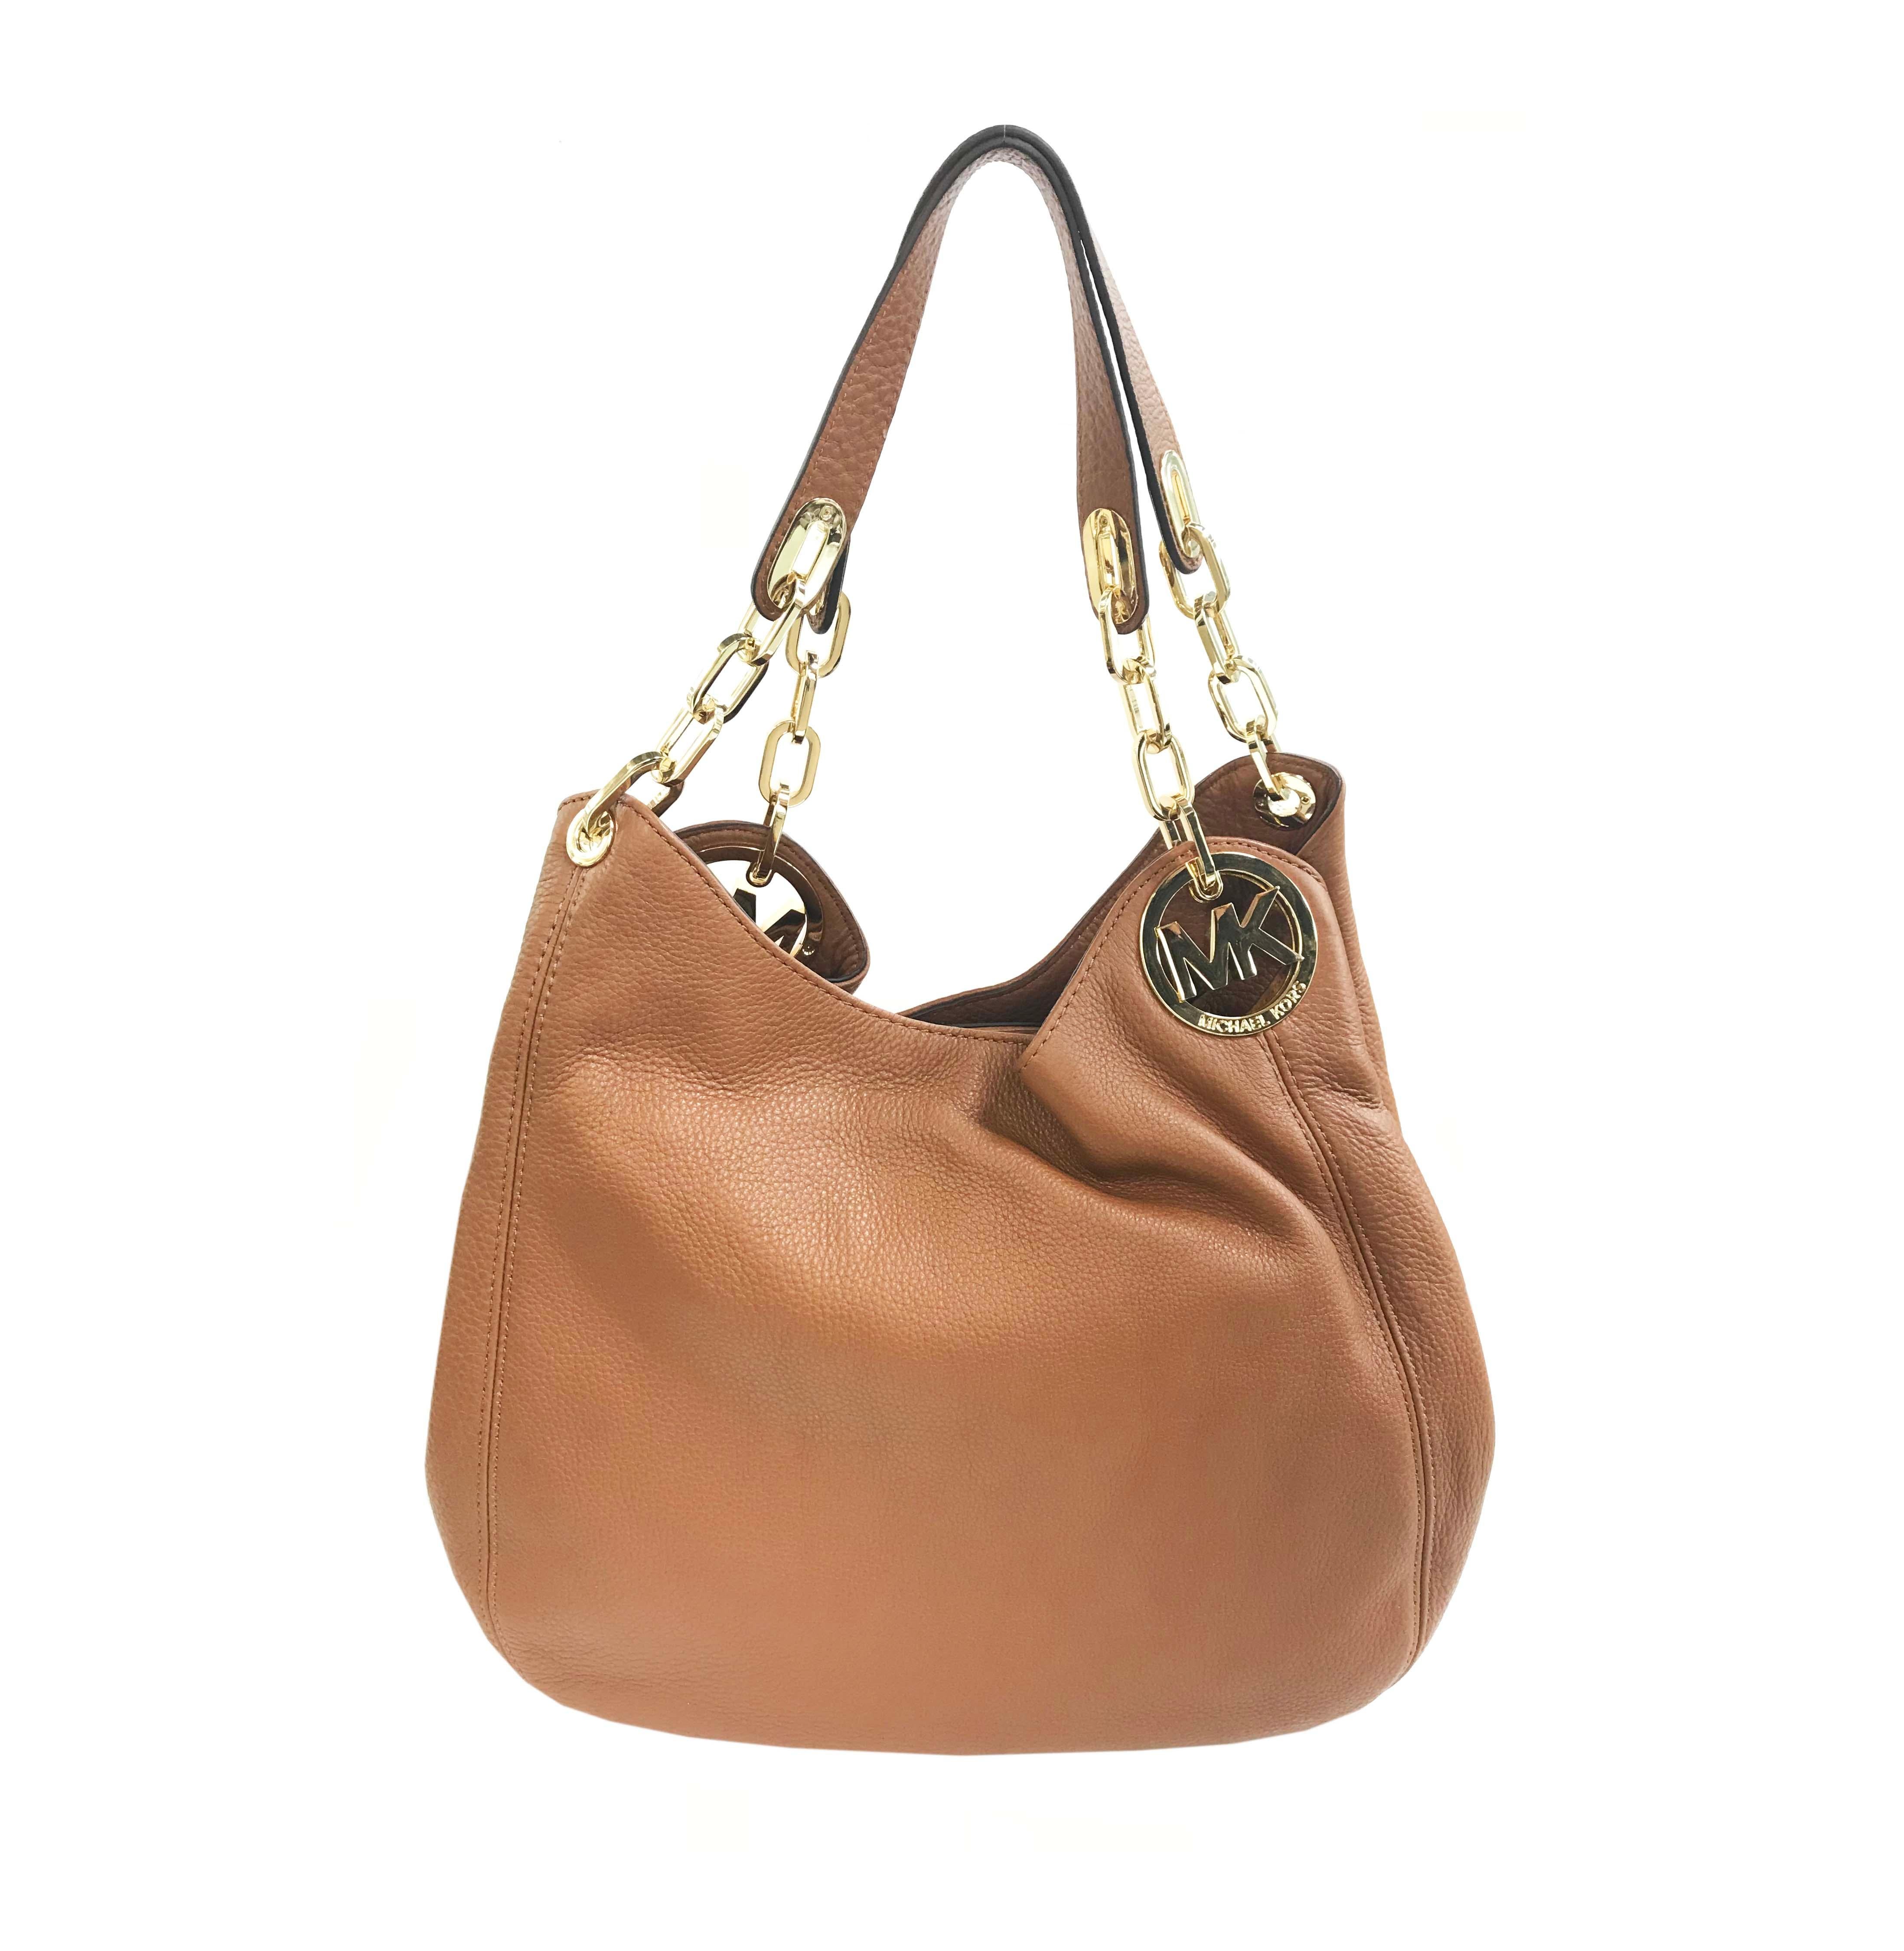 michael kors brown leather handbag